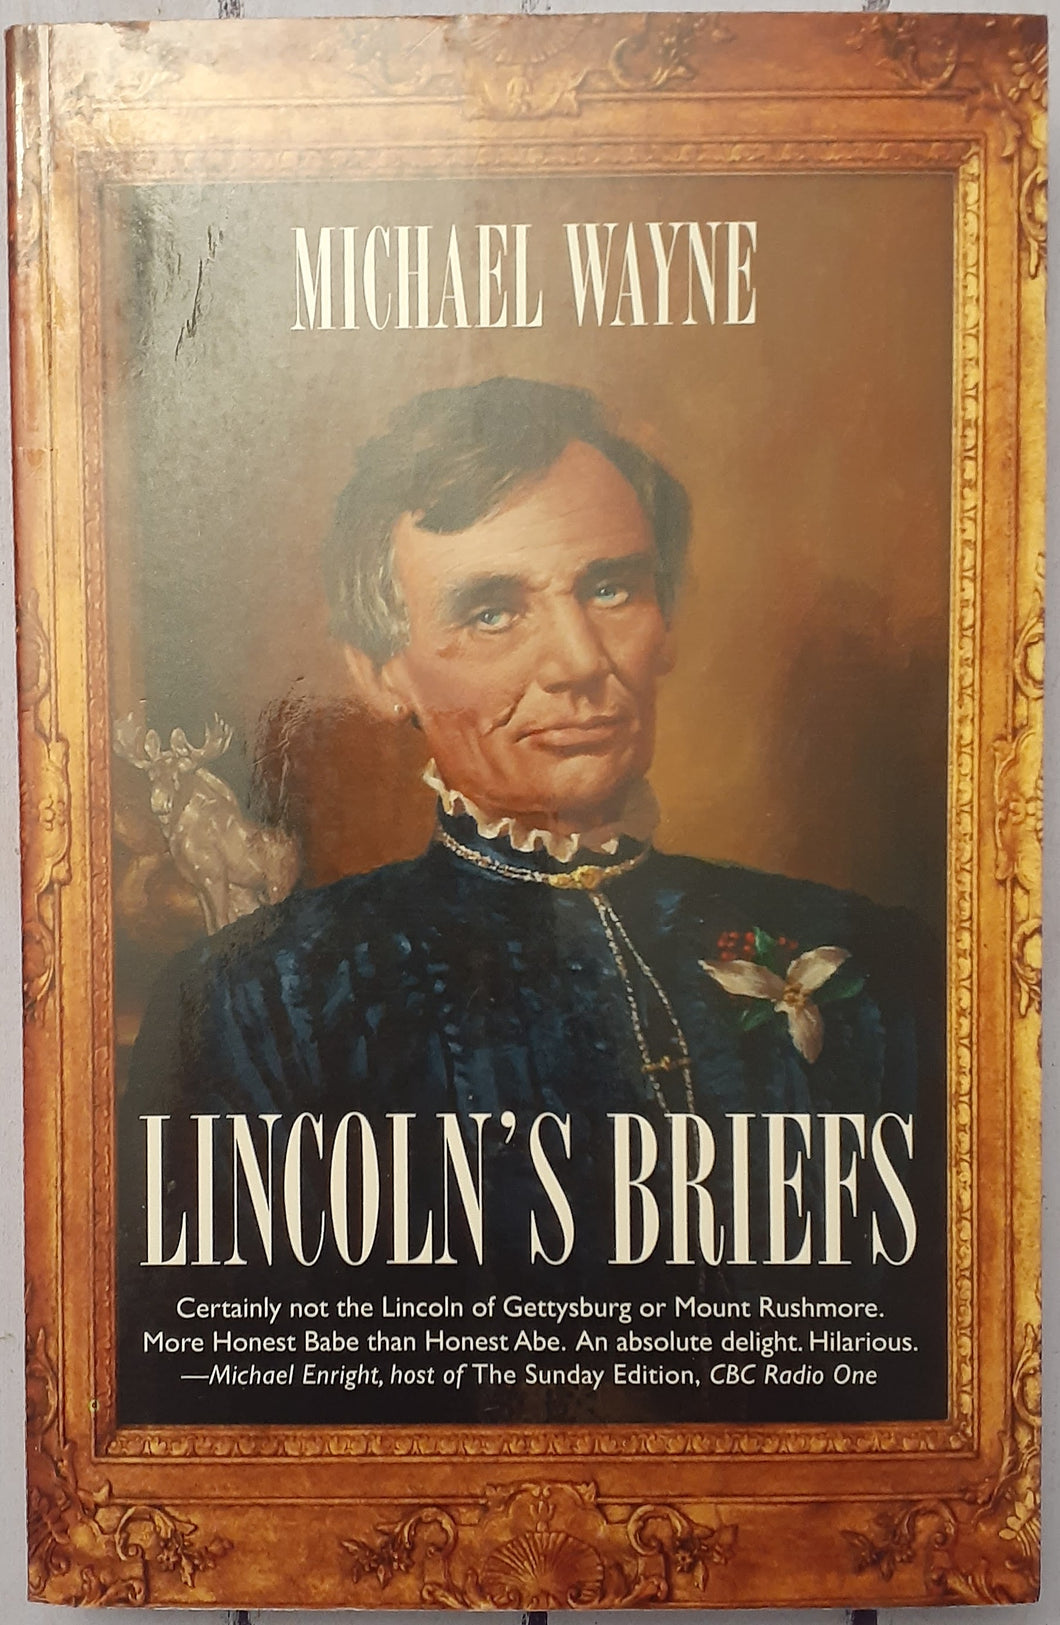 Lincoln's Briefs